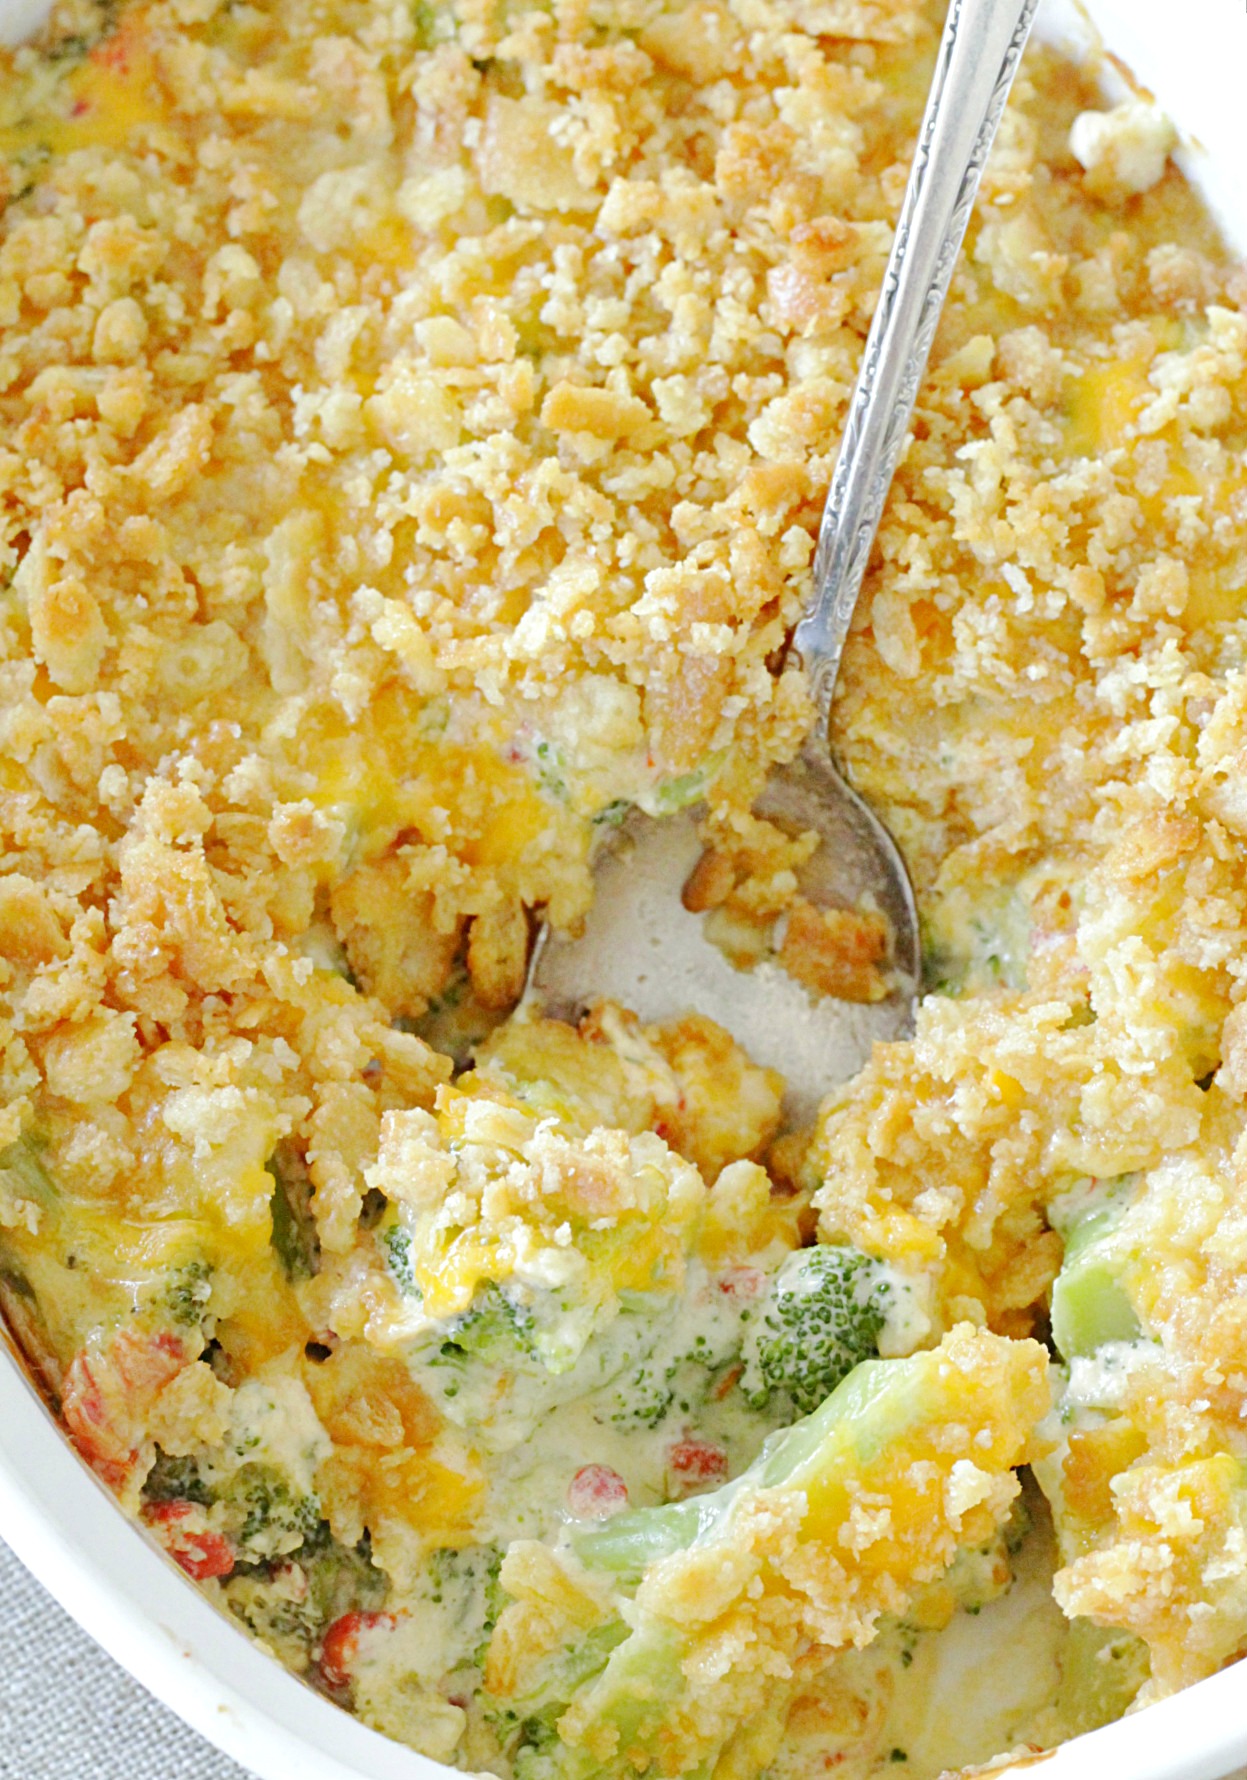 cheesy pimento broccoli casserole in dish with spoon